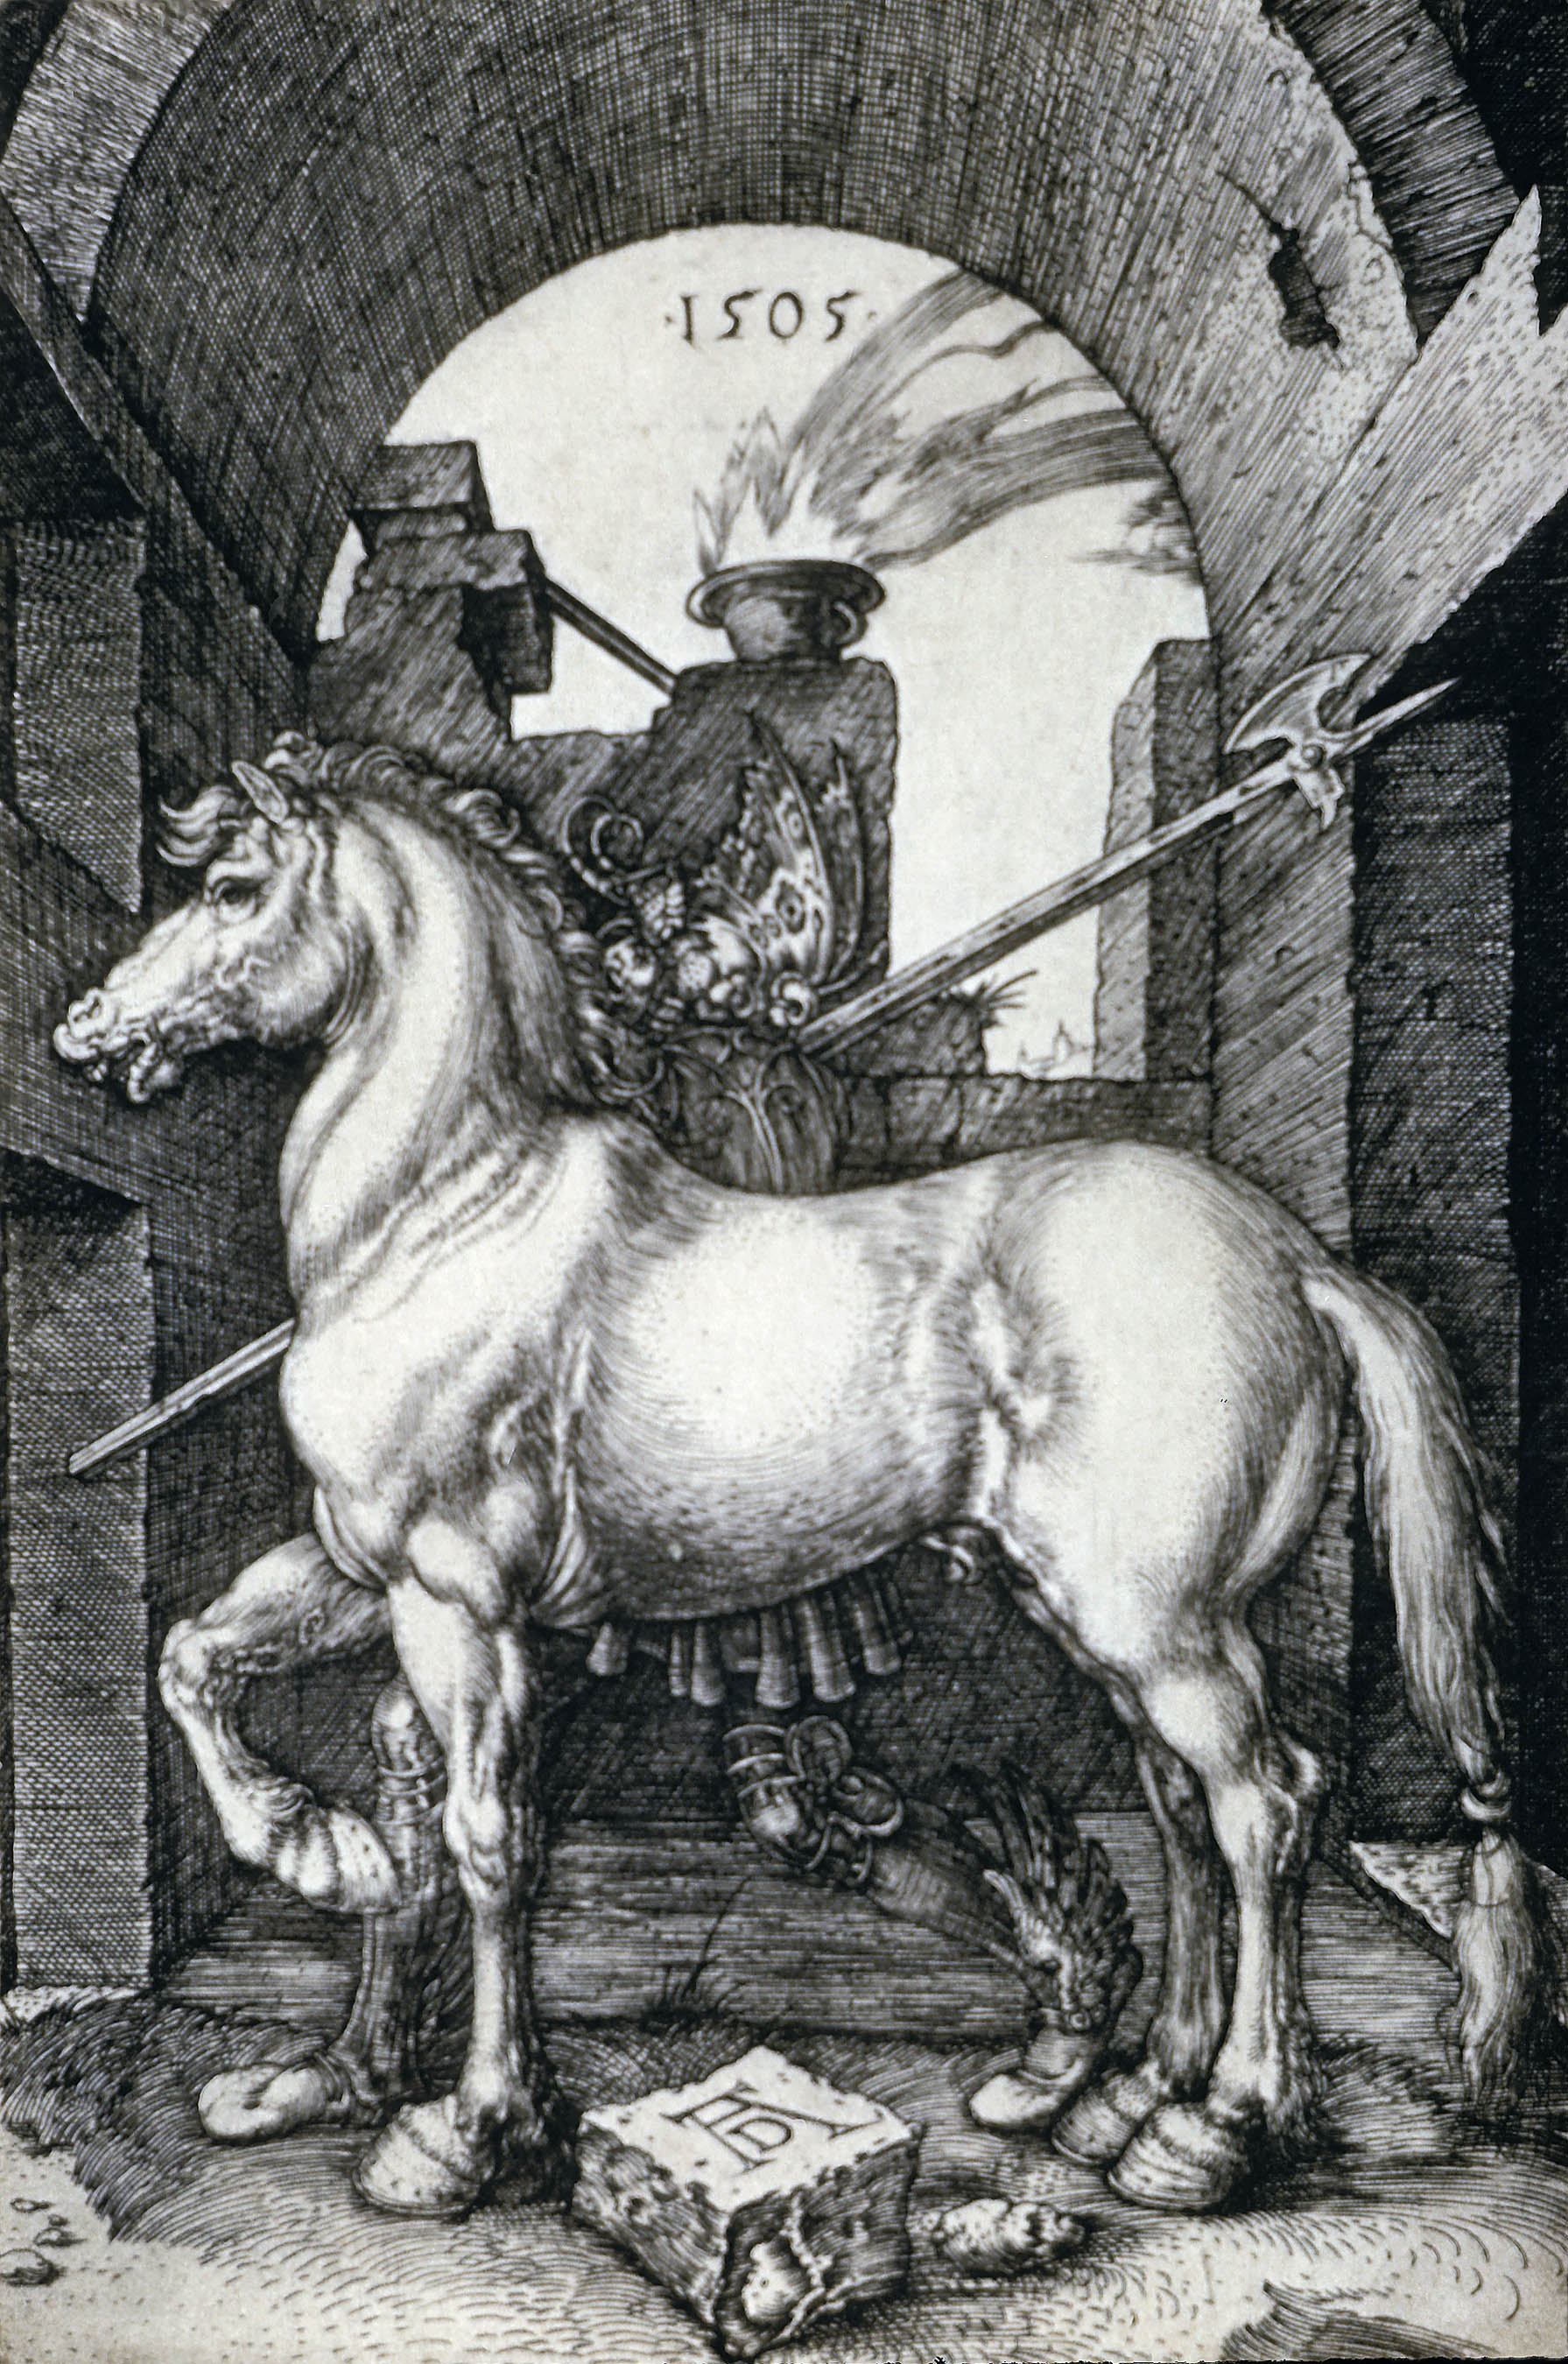 Маленькая лошадь by Альбрехт Дюрер - 1505 - - 